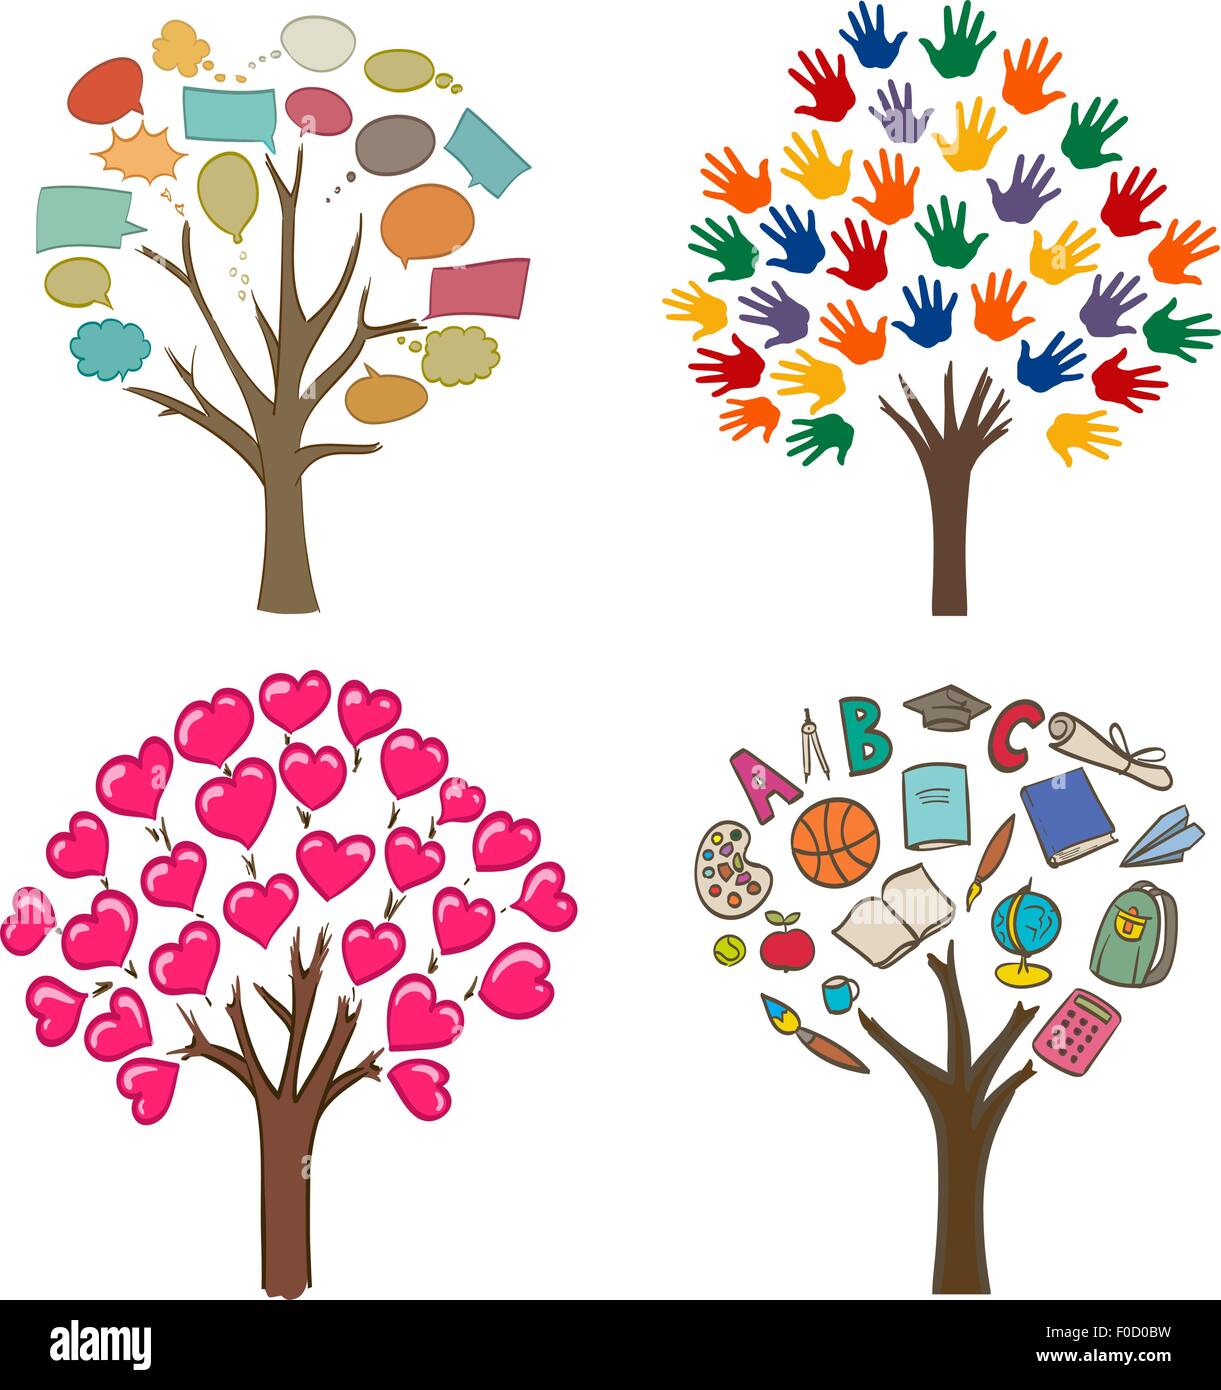 der konzeptuelle Zeichnungen mit Bäumen, Liebe, Nachricht, Schule und offenen Händen Variationen Stock Vektor